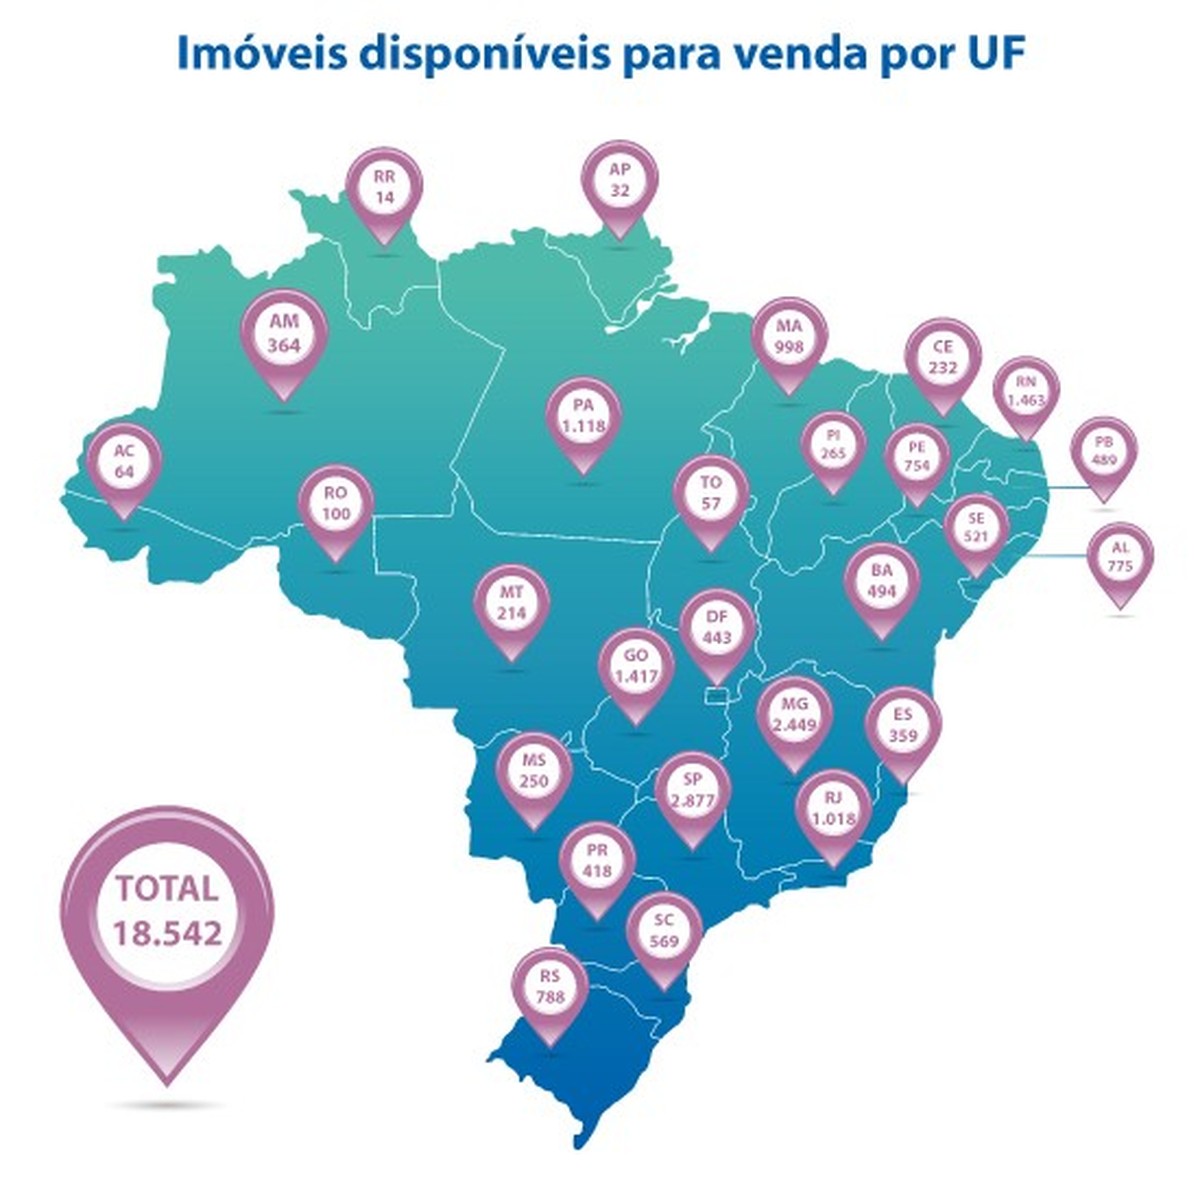 Caixa tem 232 imóveis no Ceará para leilão, licitação ou venda com preços  abaixo aos de mercado | Ceará | G1